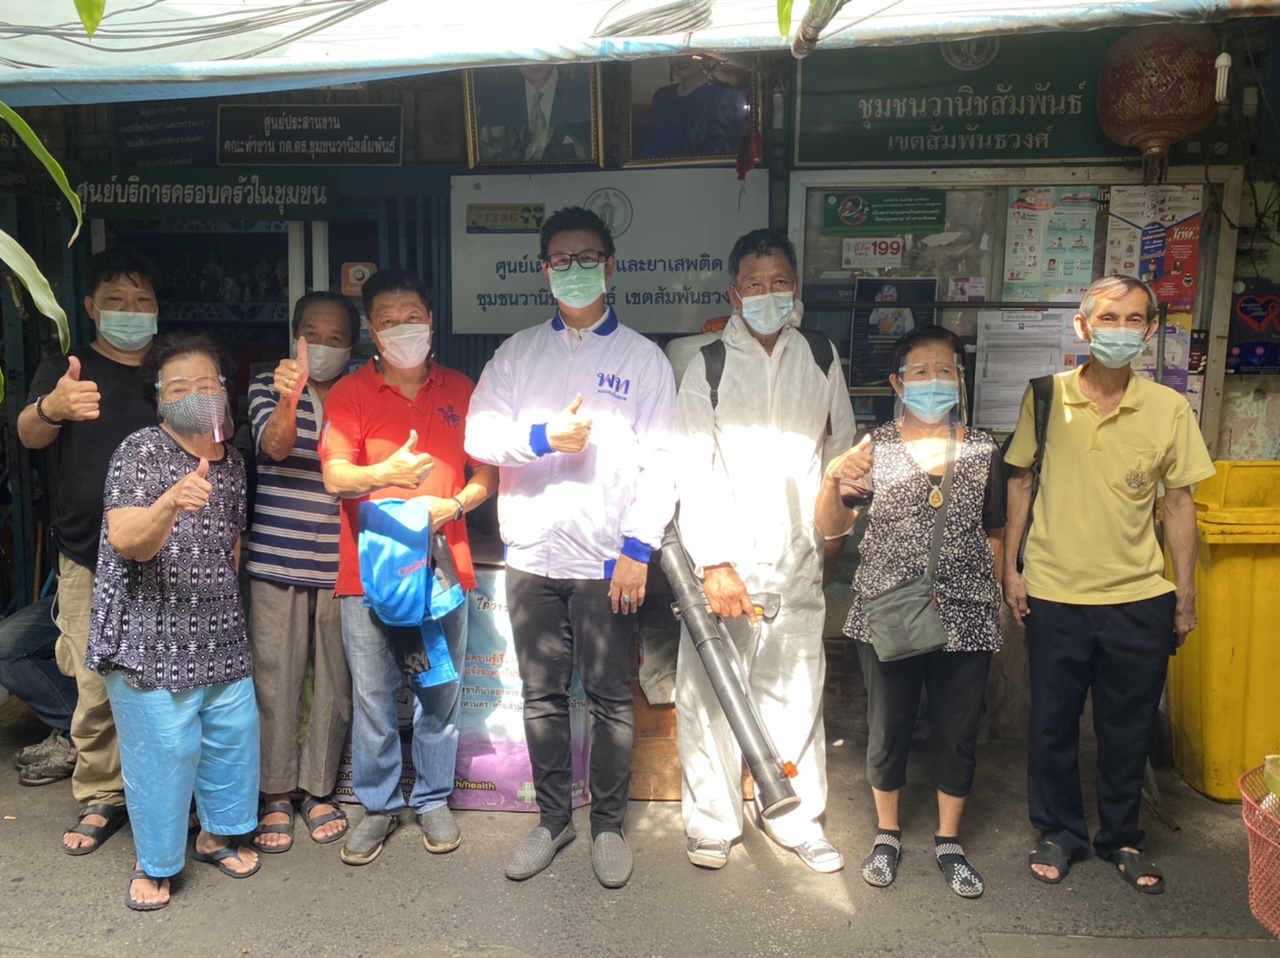 ชุมชนย่านเยาวราช “ขอบคุณ” พรรคเพื่อไทย หลังรุดเข้ามาพ่นยาฆ่าเชื้อโควิดแฟลตดังอย่างรวดเร็ว หลังหามคนติดโควิดเข้าโรงพยาบาล!